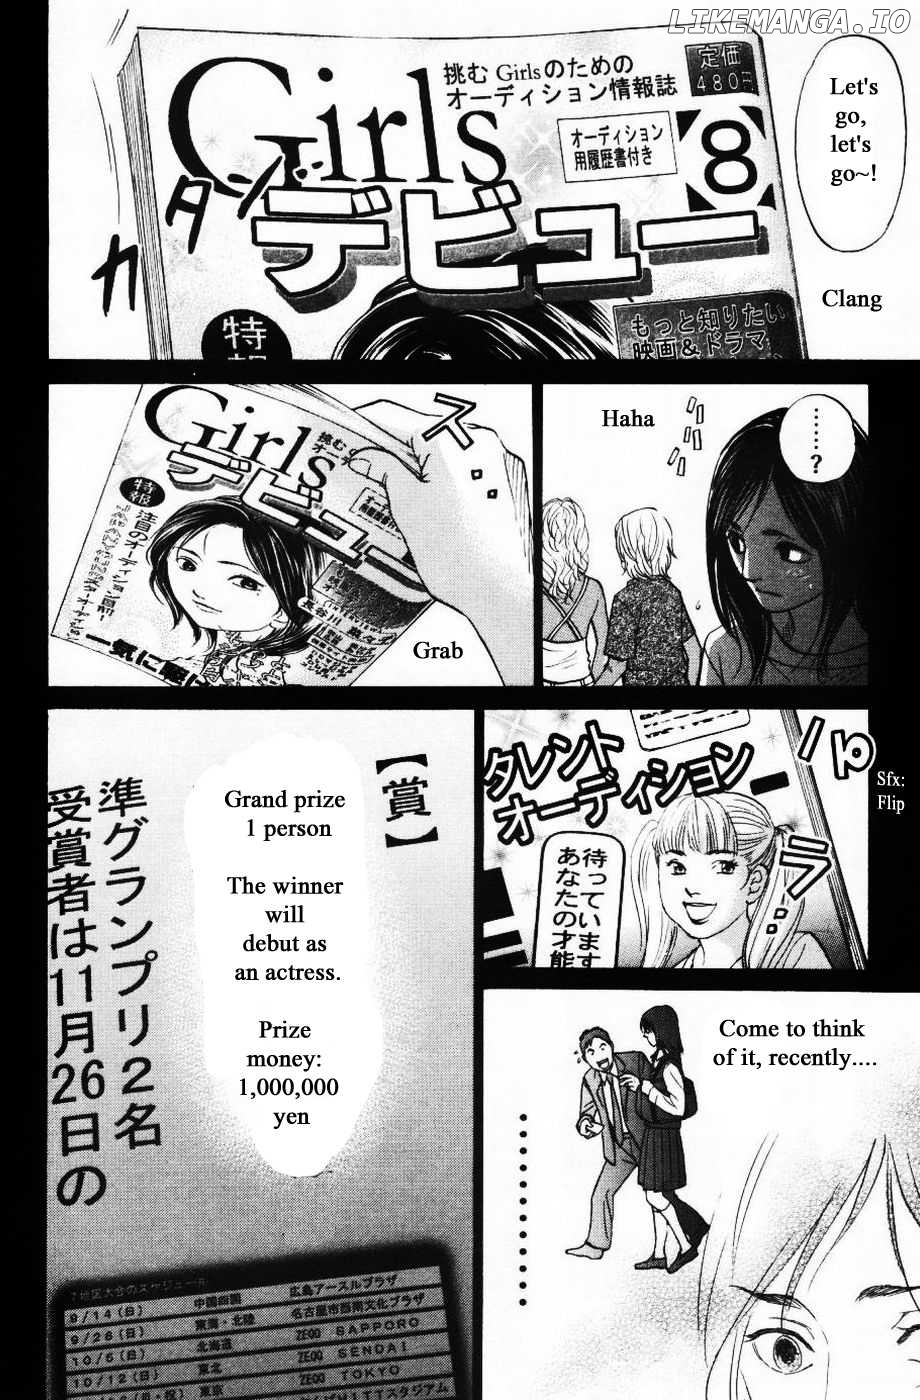 Haruka 17 Chapter 129 - page 14